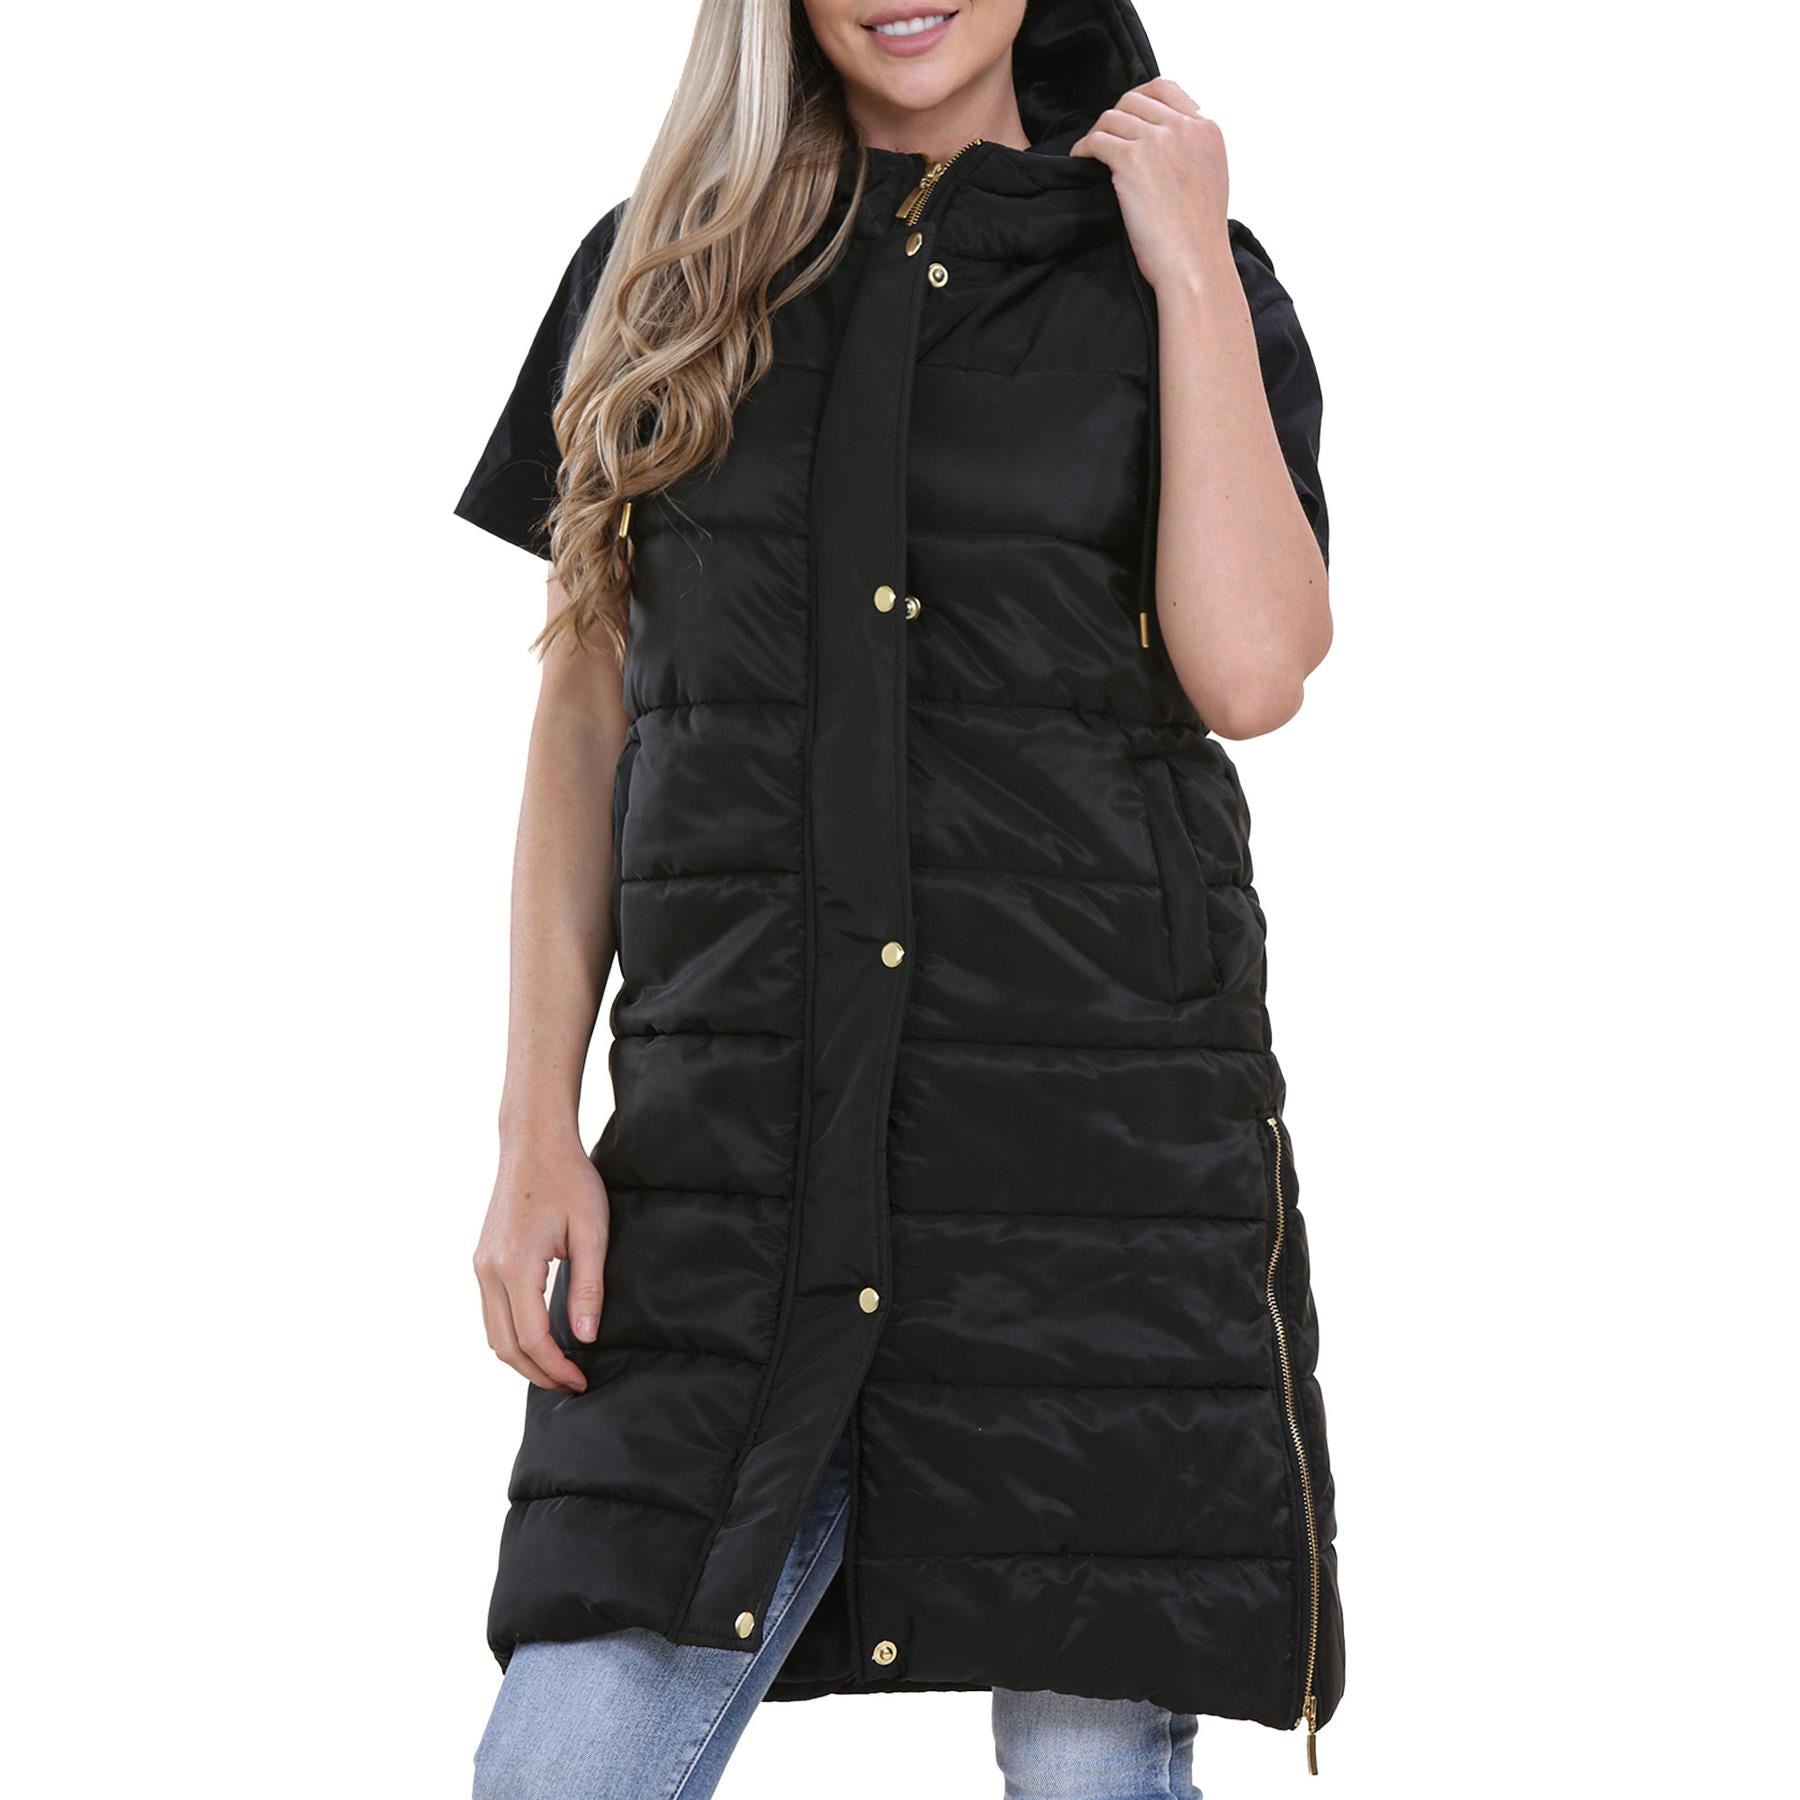 Ladies Oversized Gilet Long Line Style Black Jacket Coat